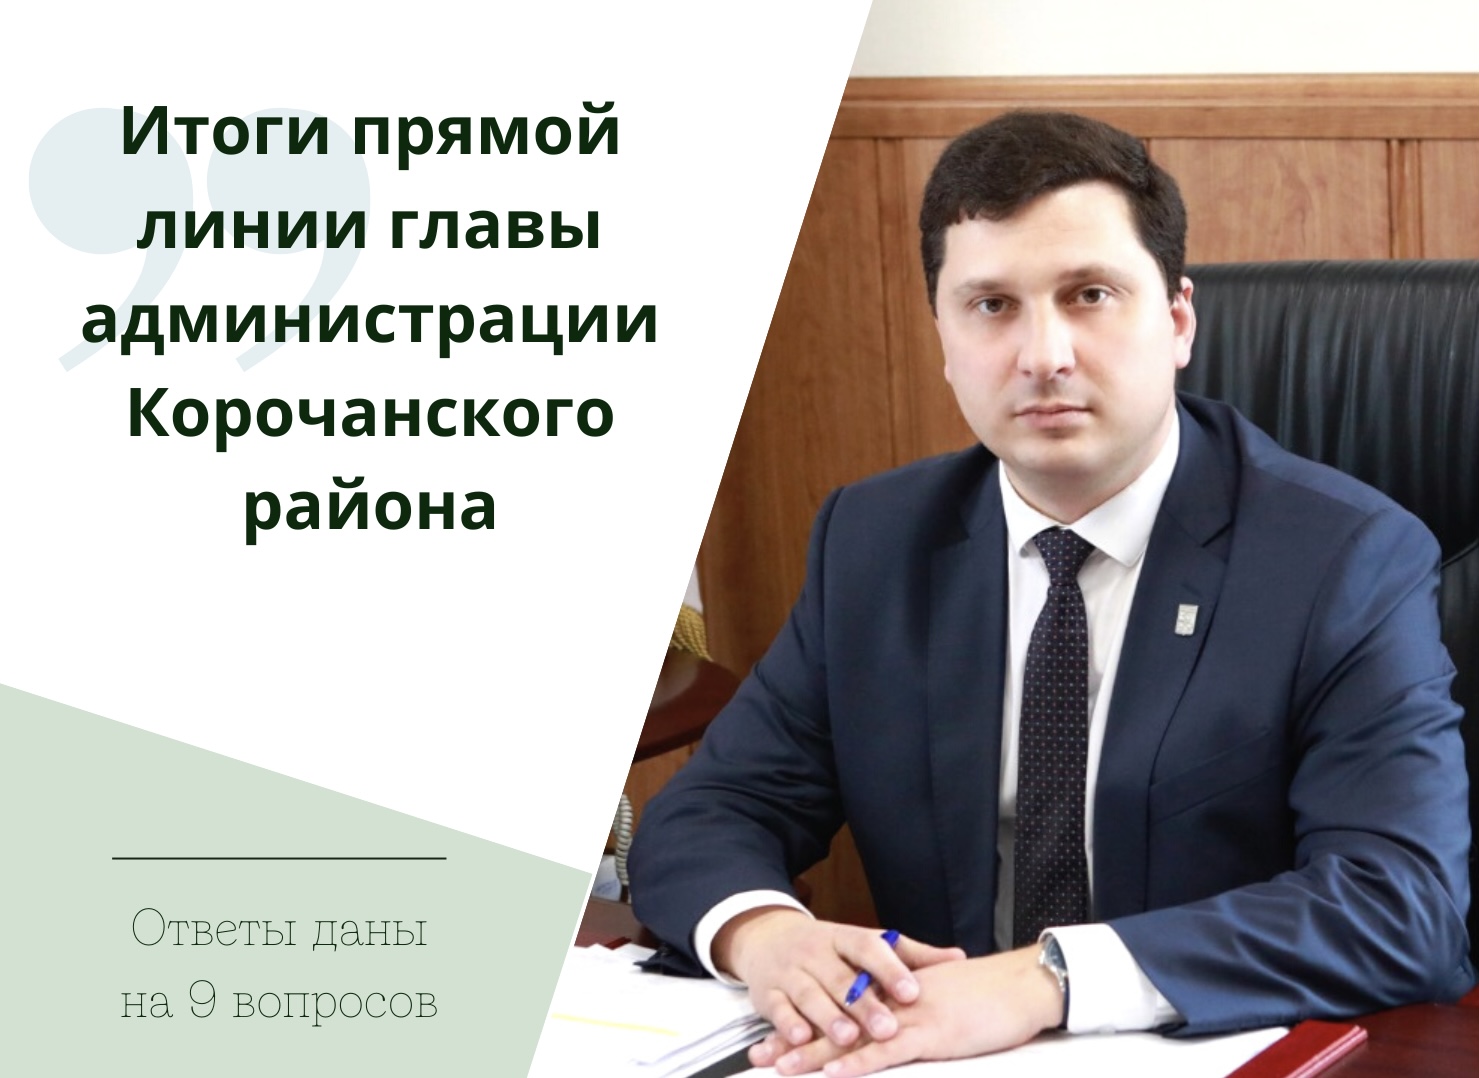 Во время прямой линии глава муниципалитета Николай Нестеров ответил на девять вопросов жителей